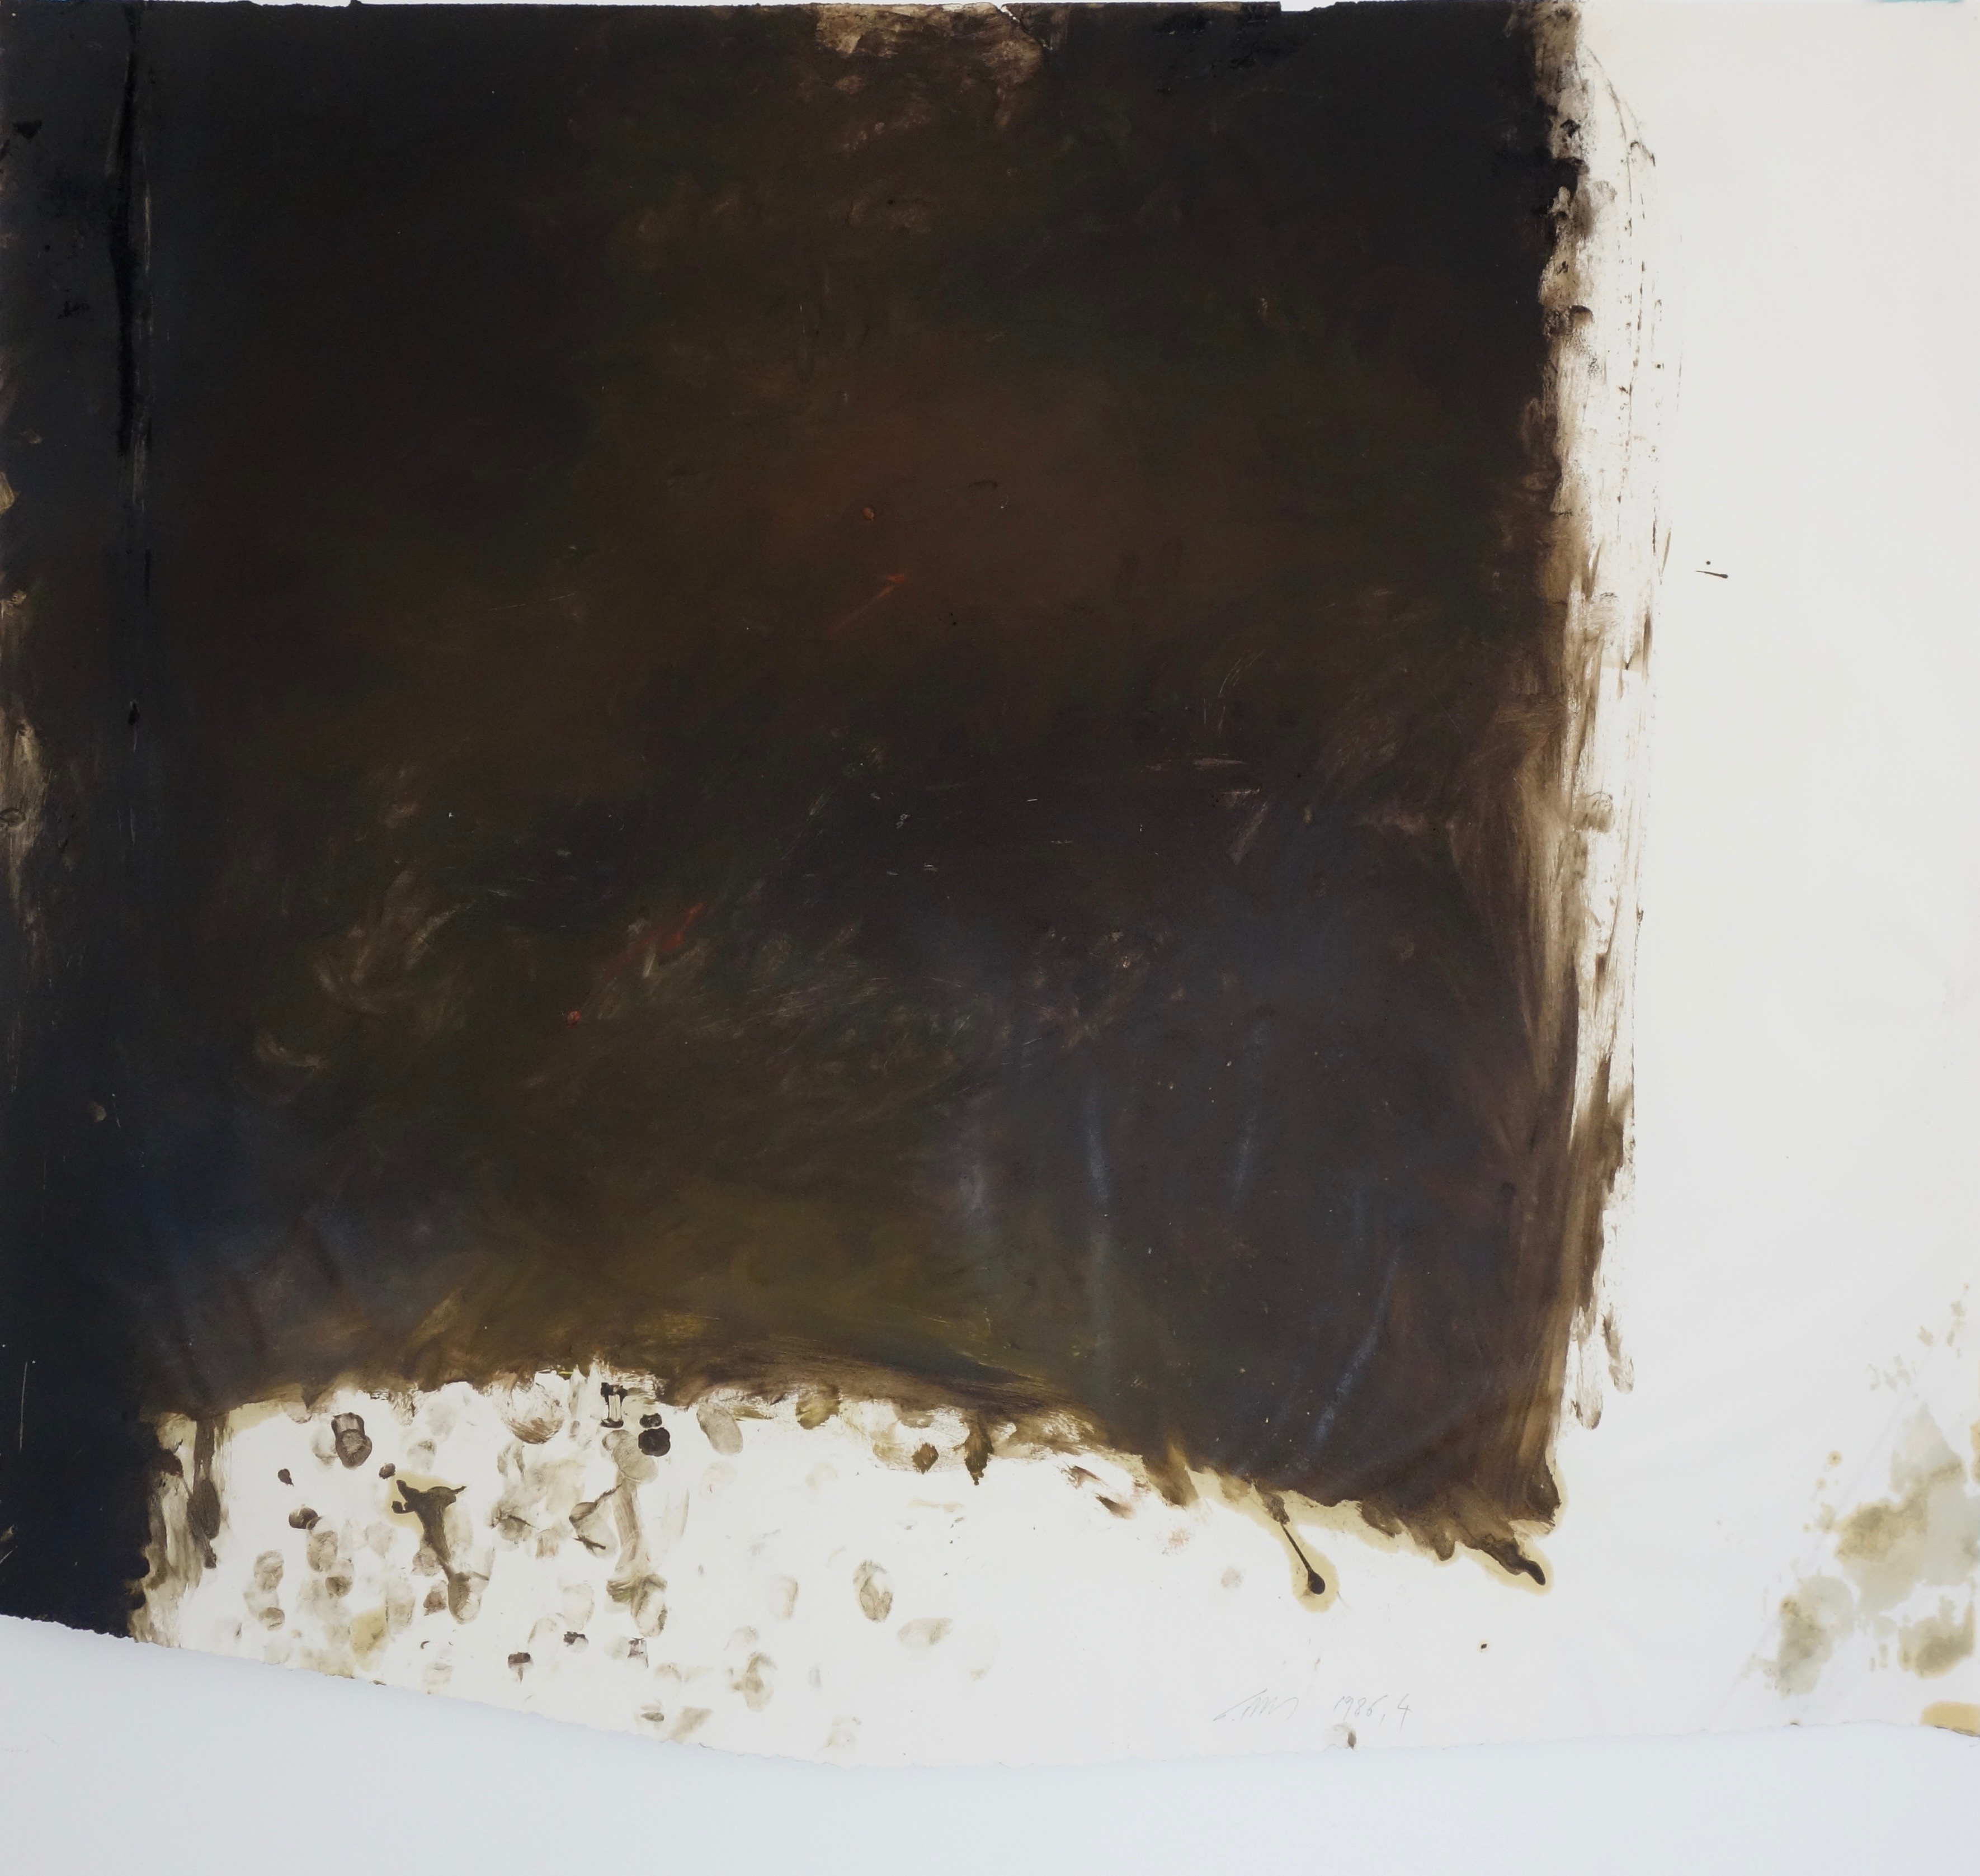 Arbeit auf Papier 4, Eiöltempera und Öl auf Papier, ca. 77,5 x 88 cm, 1986, Erwin Holl